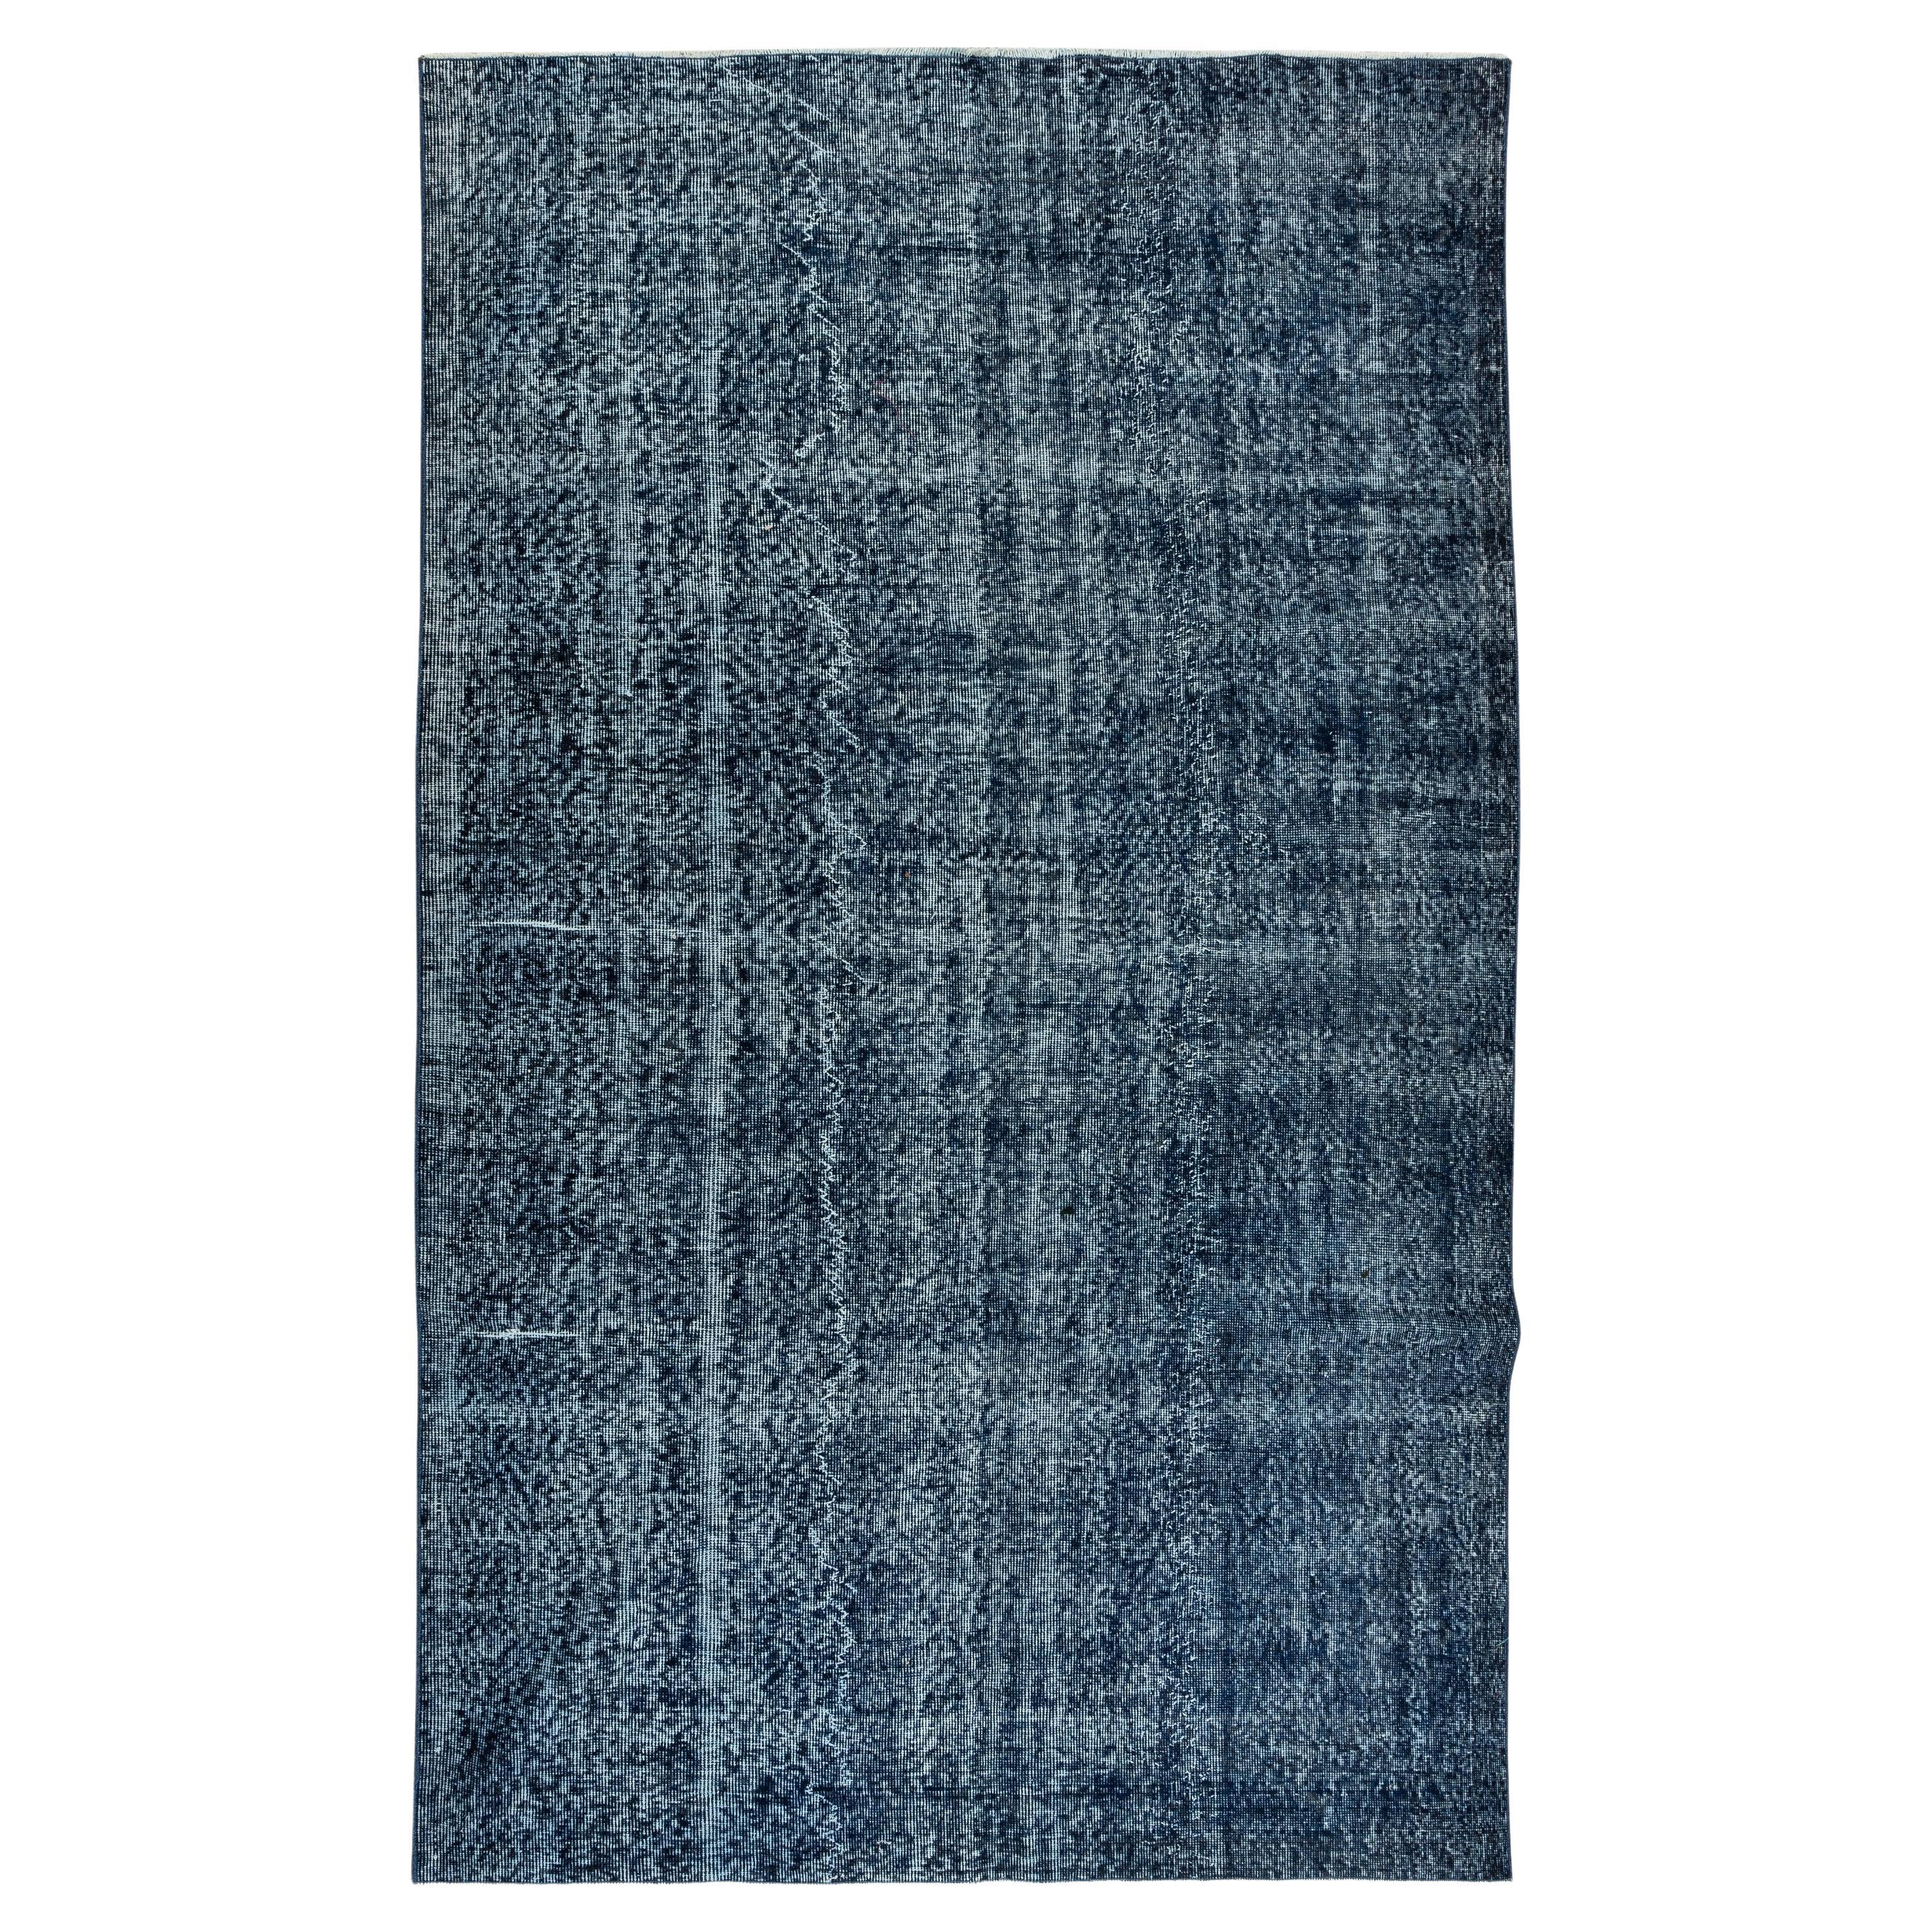 5.6x9.2 Ft Modern Navy Blue Area Rug, Vintage Handmade Turkish Wool Carpet (tapis de laine turque fait à la main)